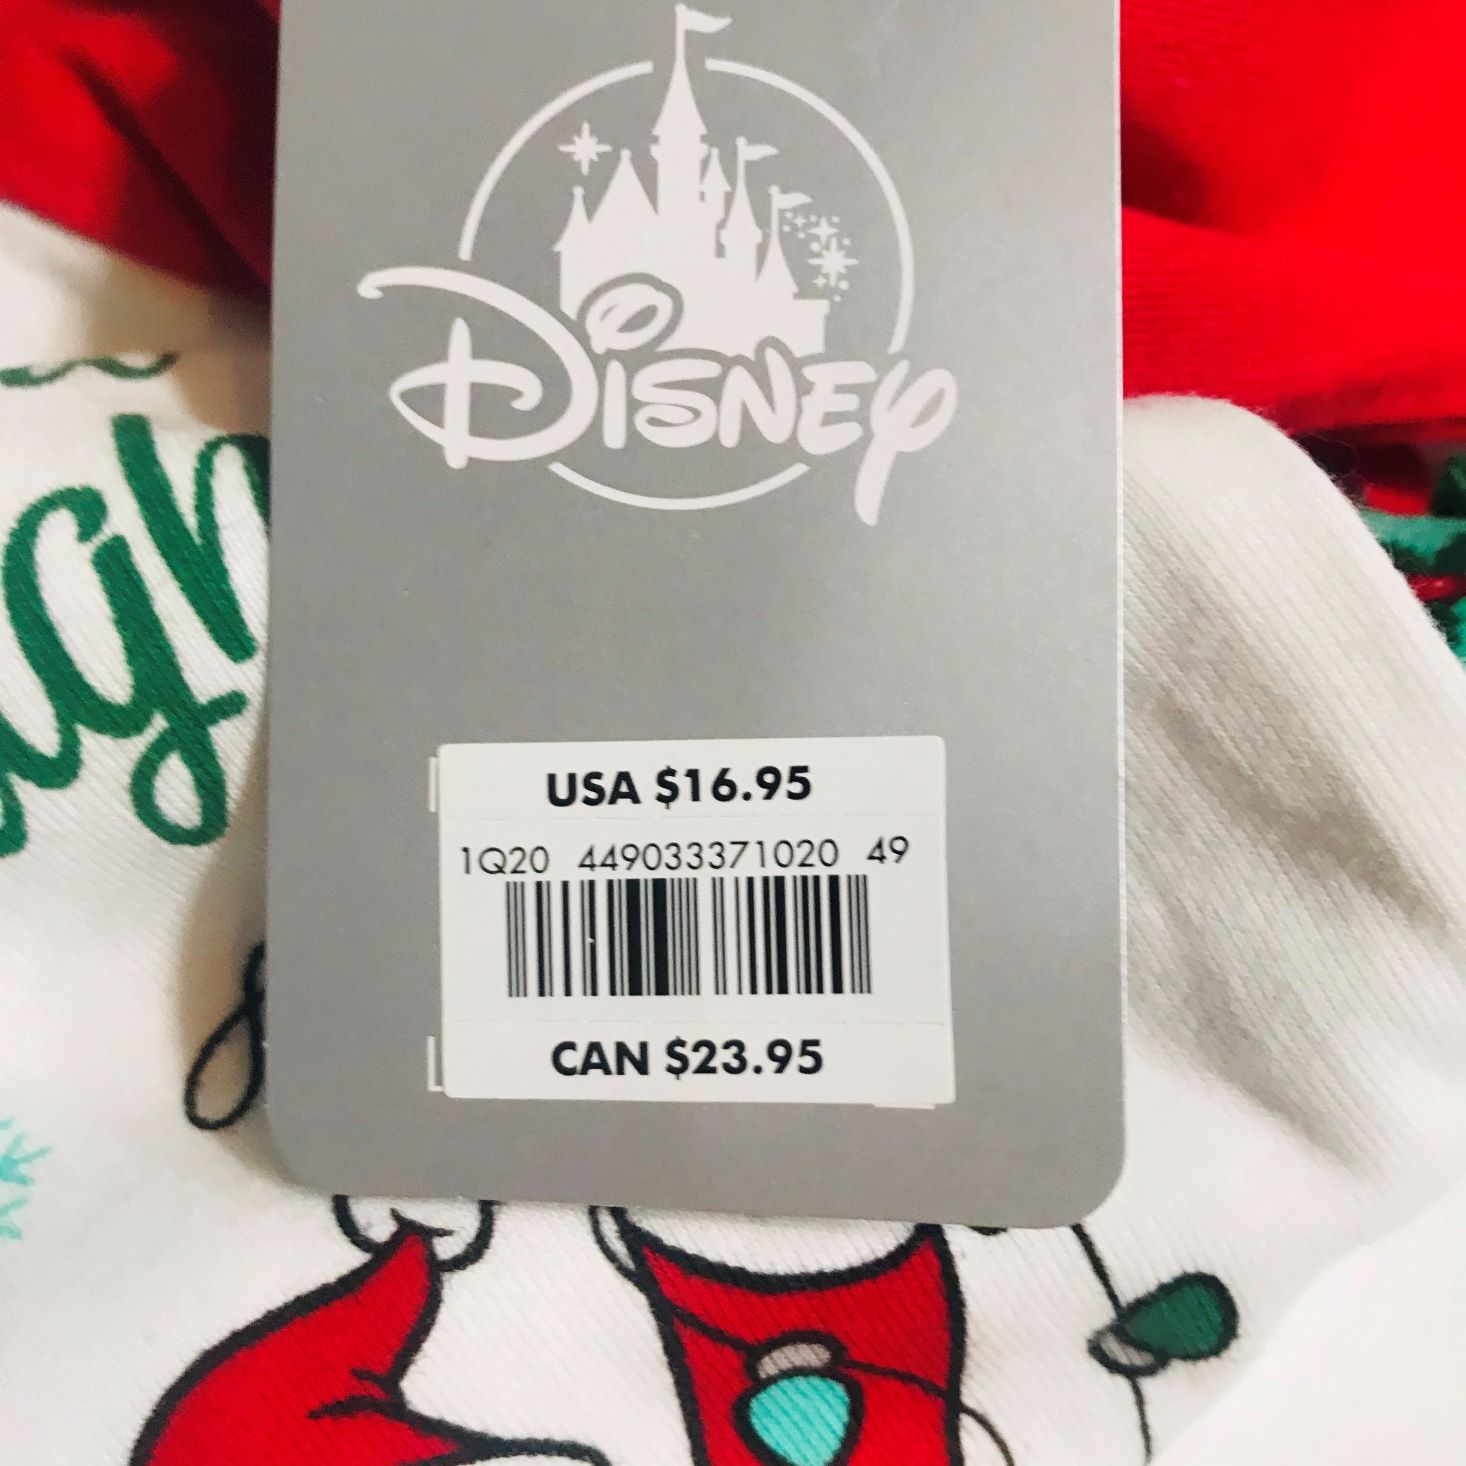 Disney Bedtime Box November 2019 price tag